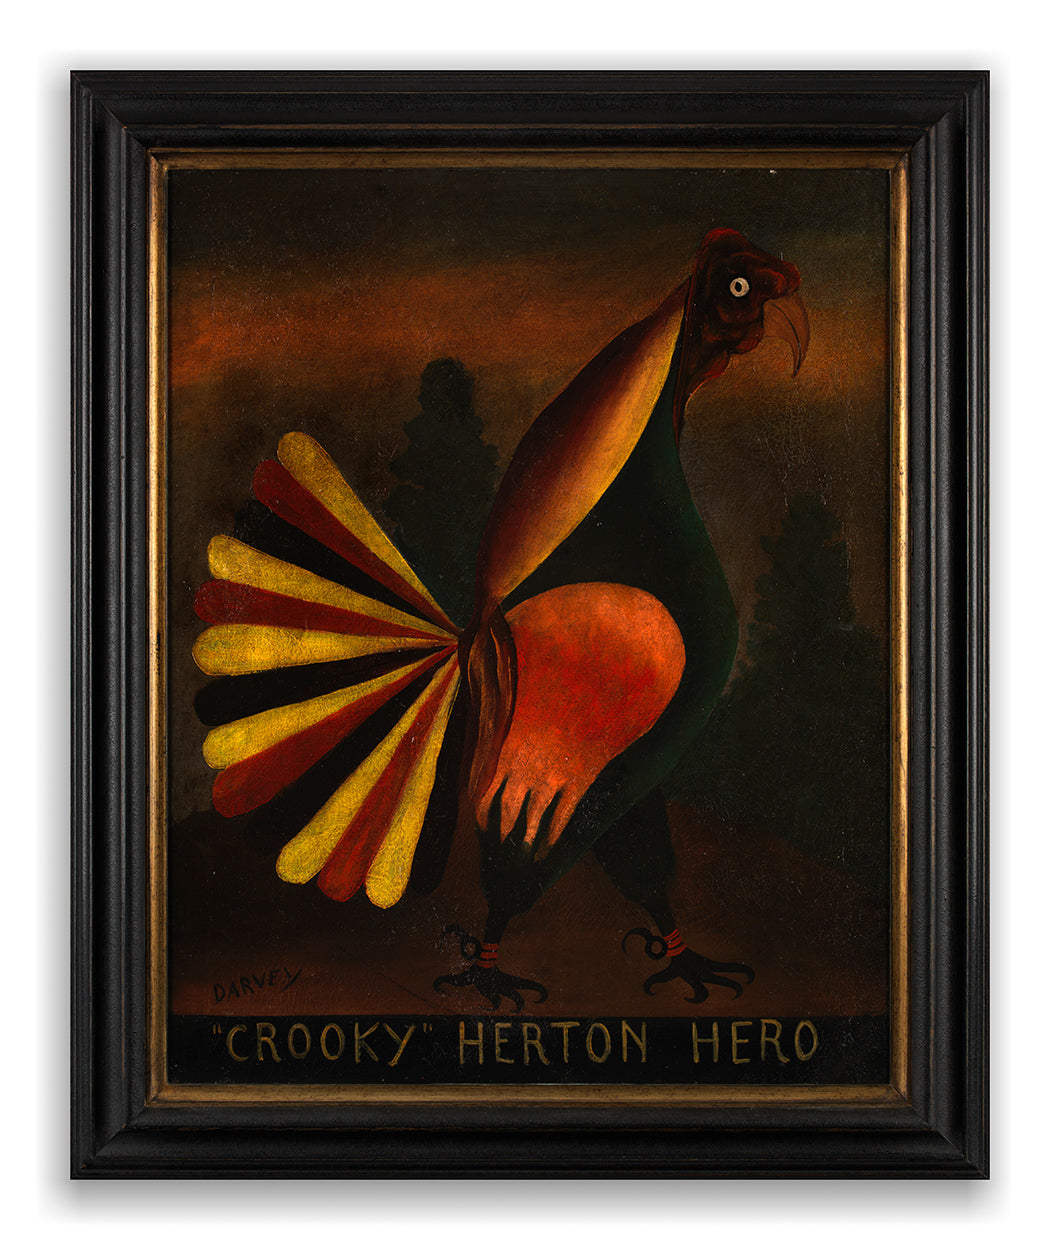 "Crooky" Herton Hero and "Nasty" Dulleen Hero